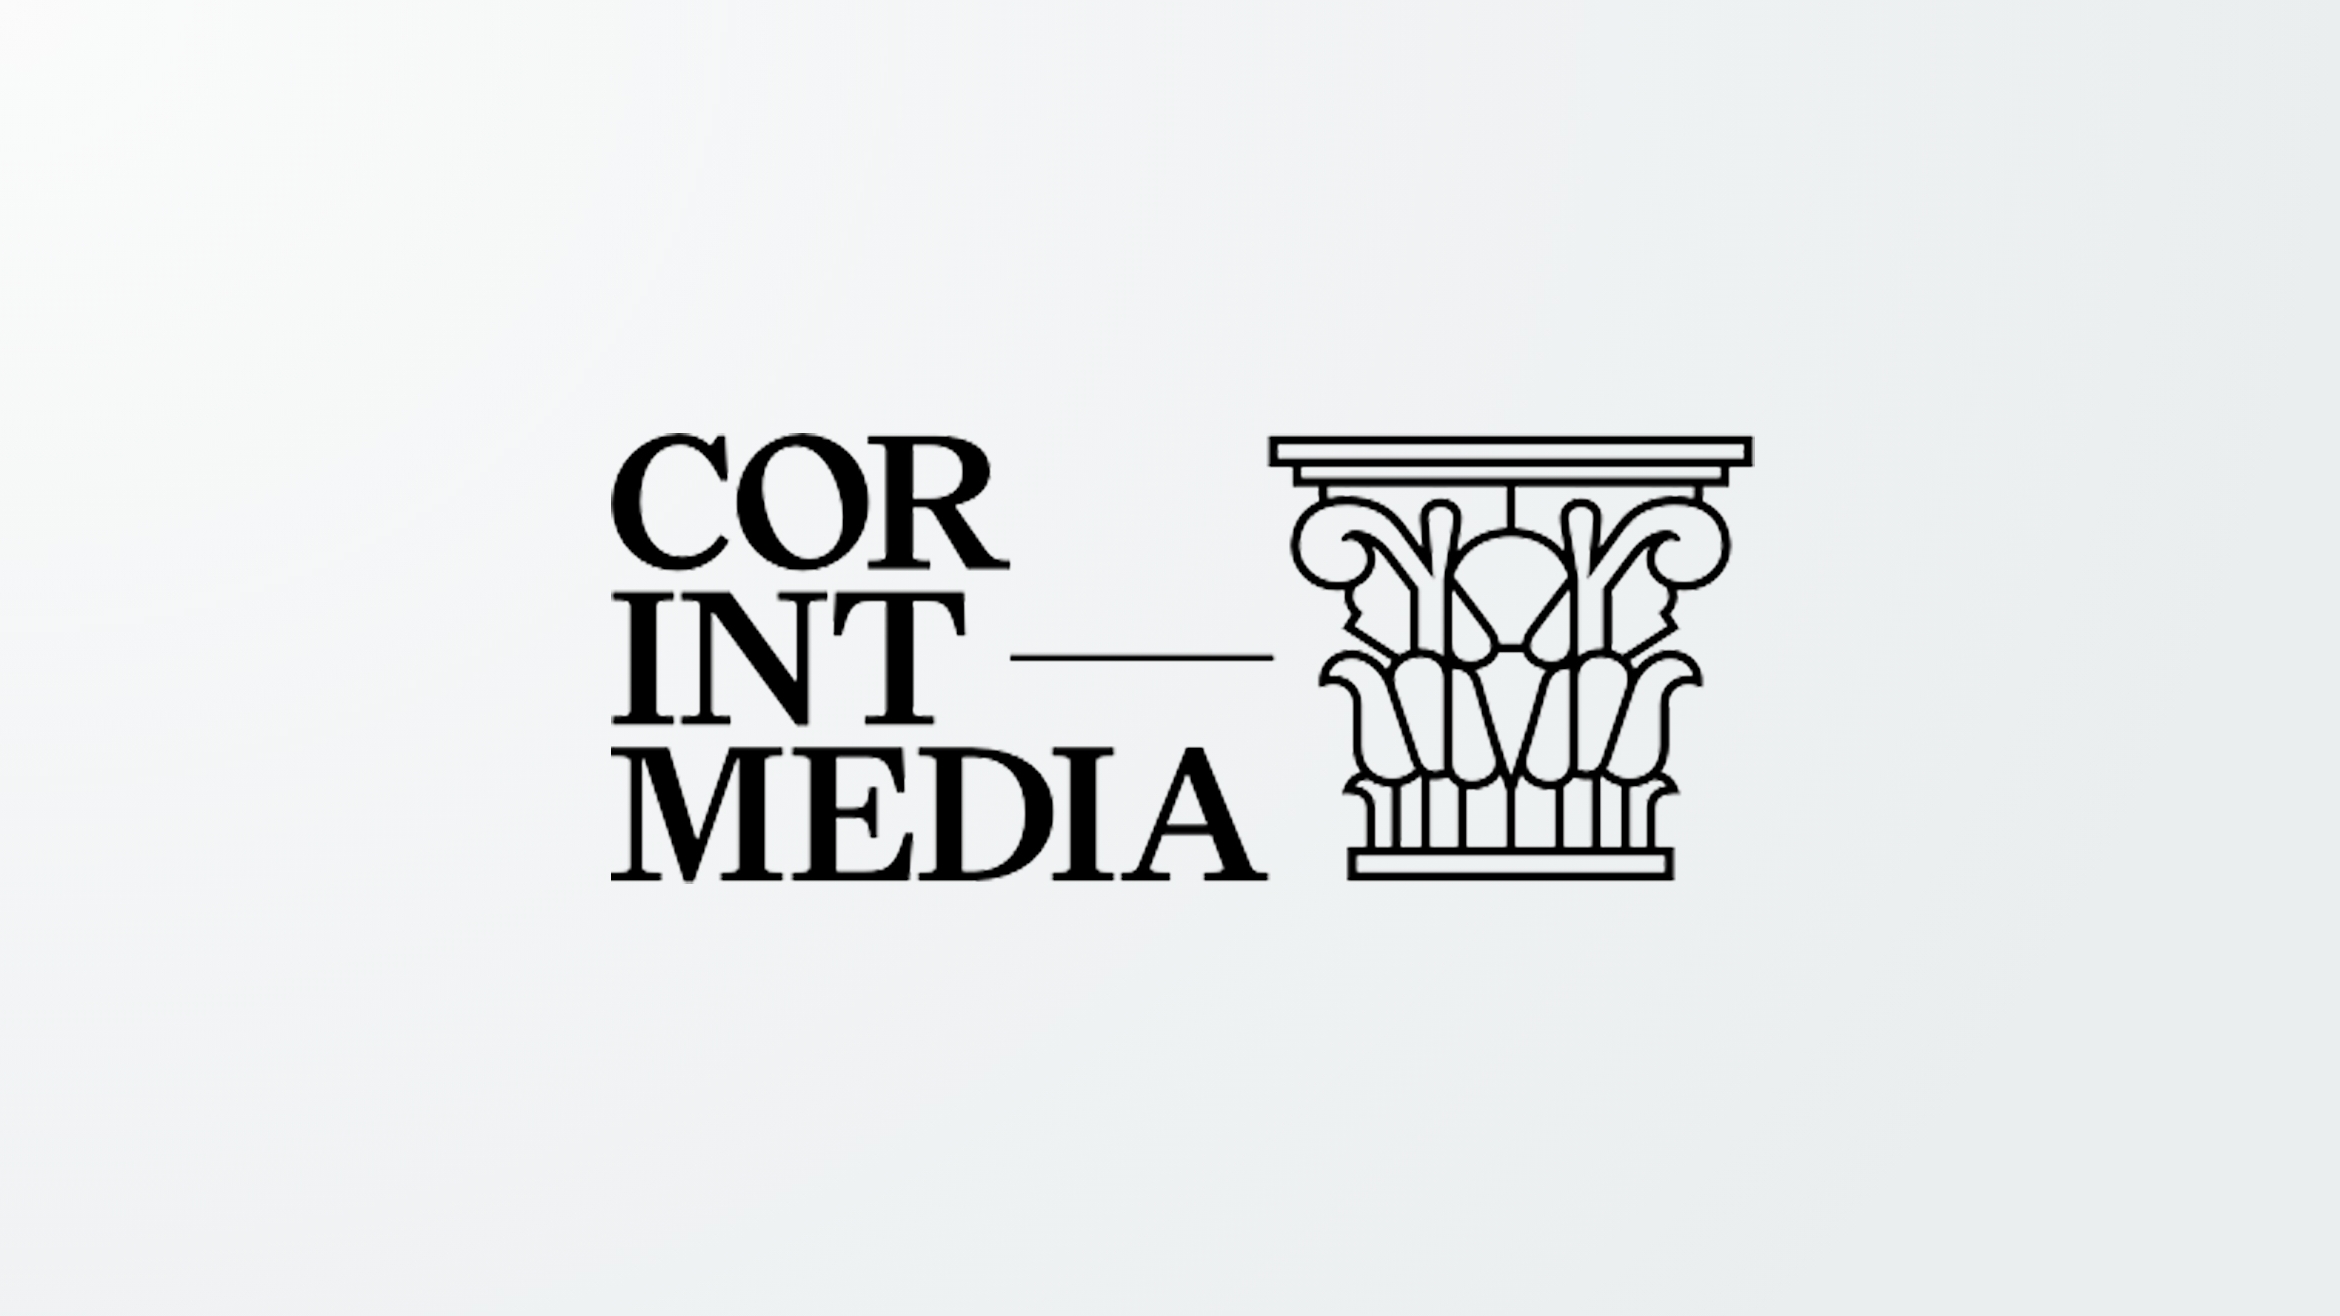 Die Verwertungsgesellschaft Corint Media vertritt verschiedene Medien –